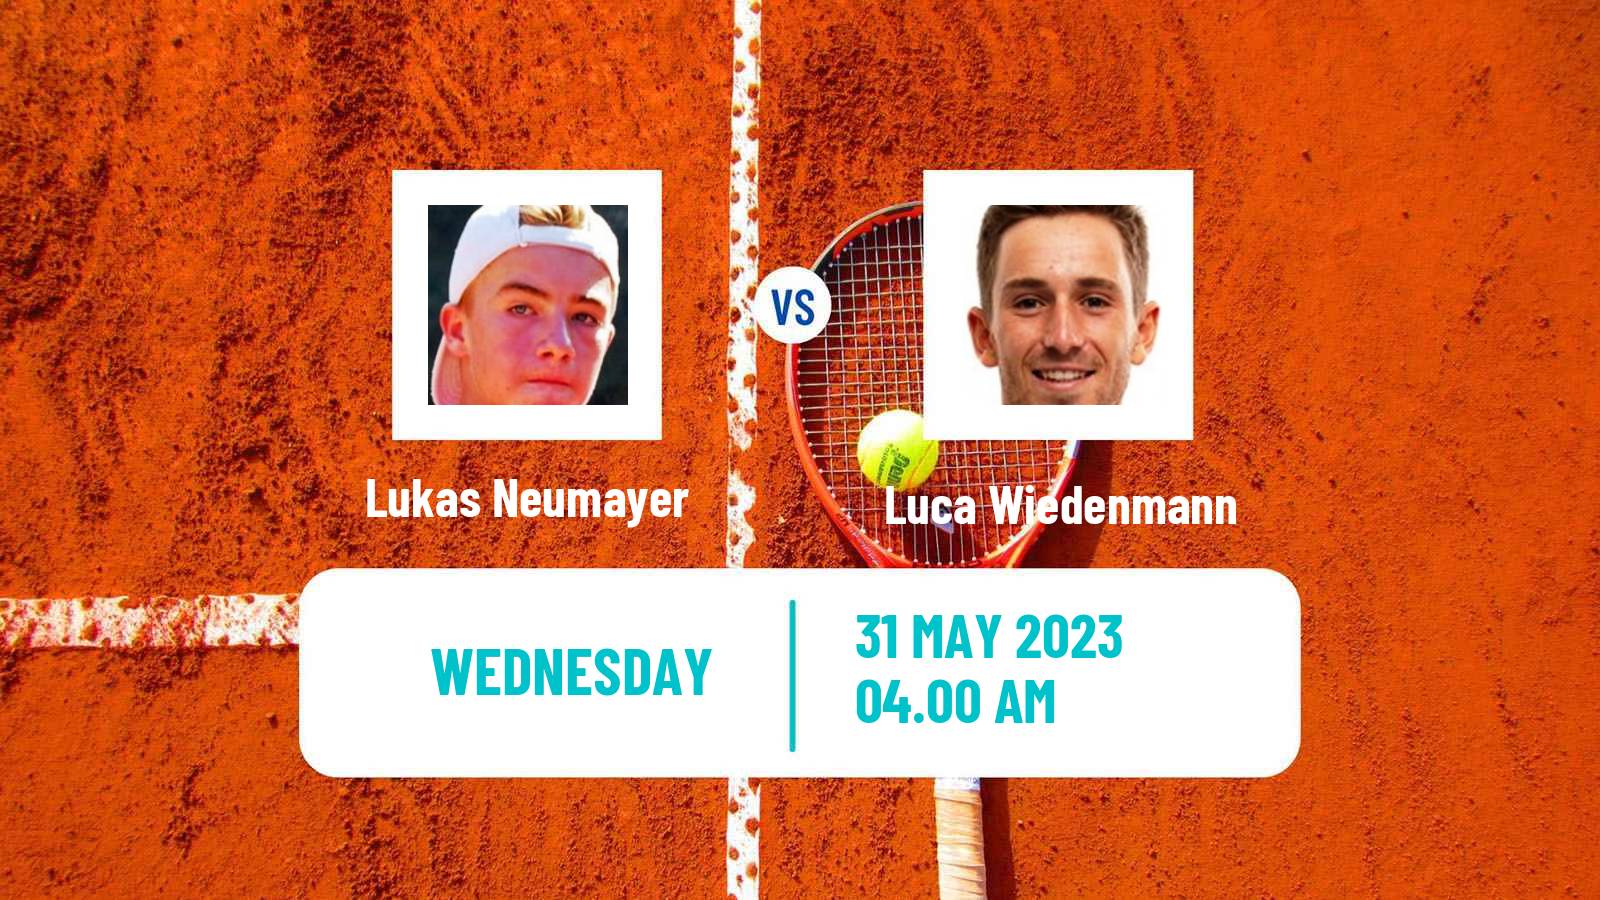 Tennis ITF M25 Jablonec Nad Nisou Men Lukas Neumayer - Luca Wiedenmann